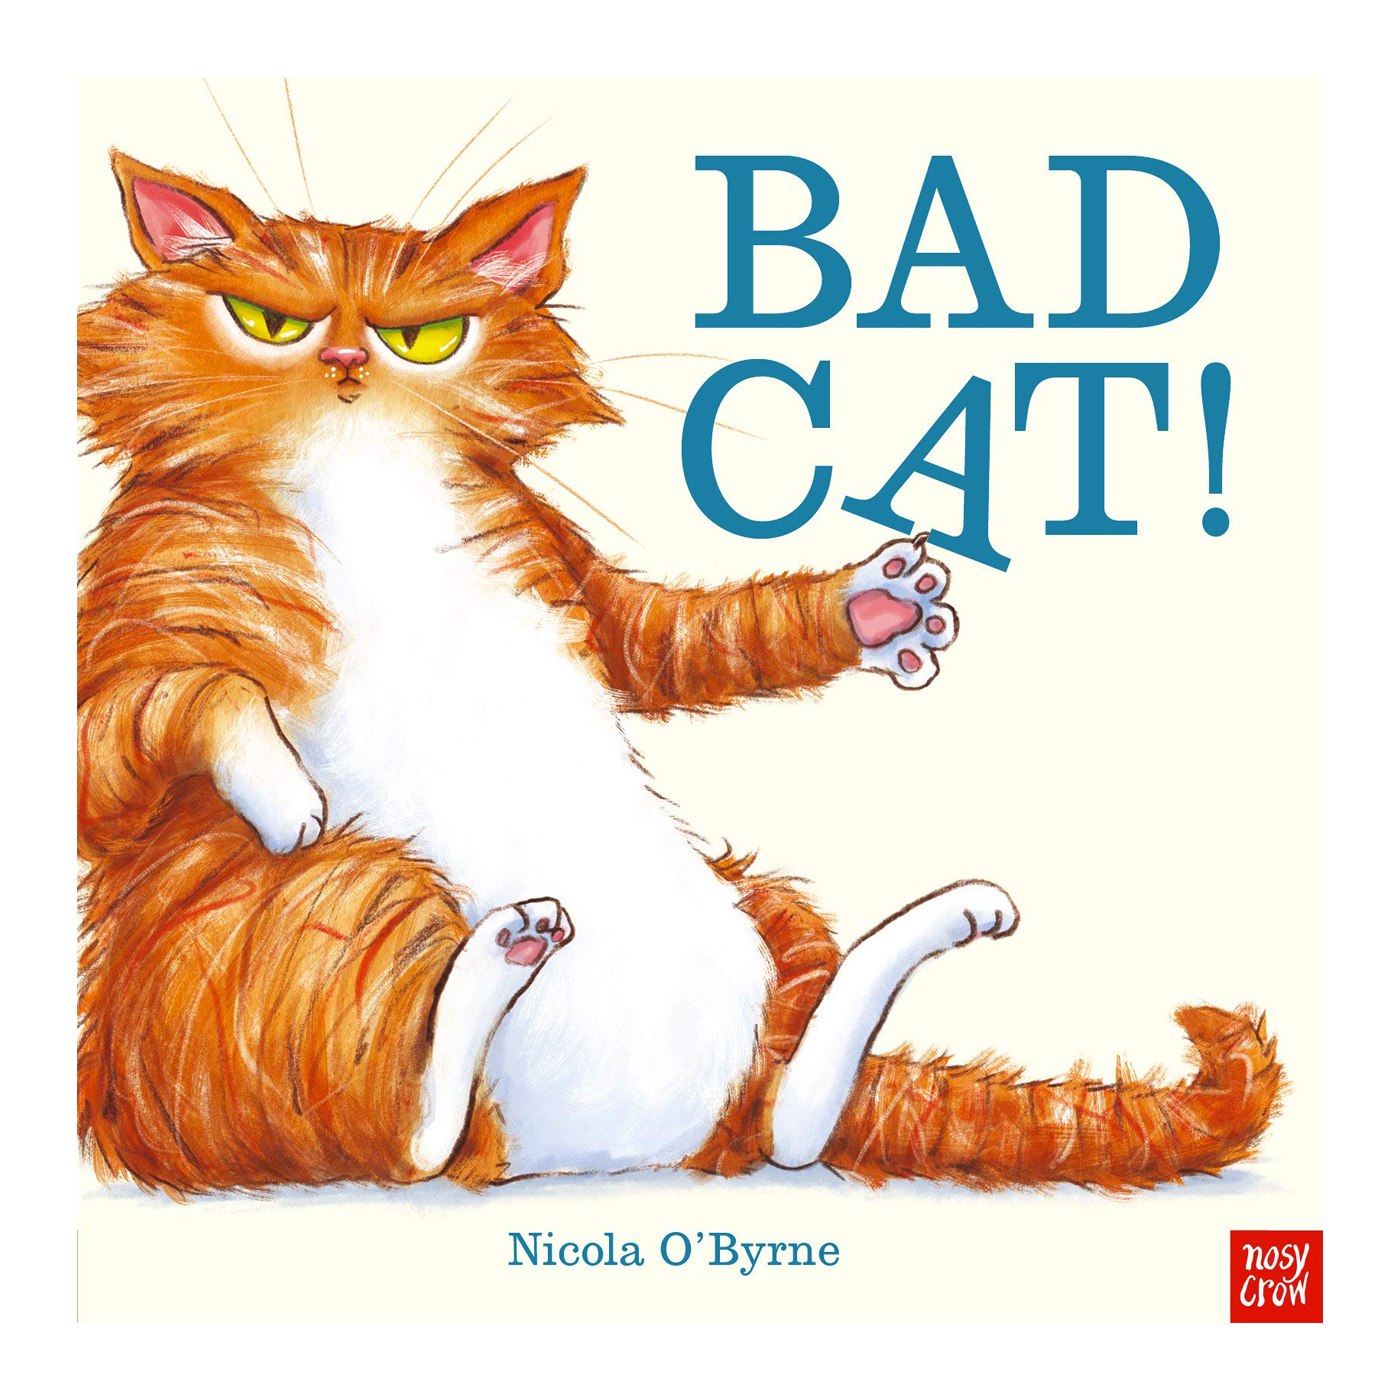  Bad Cat